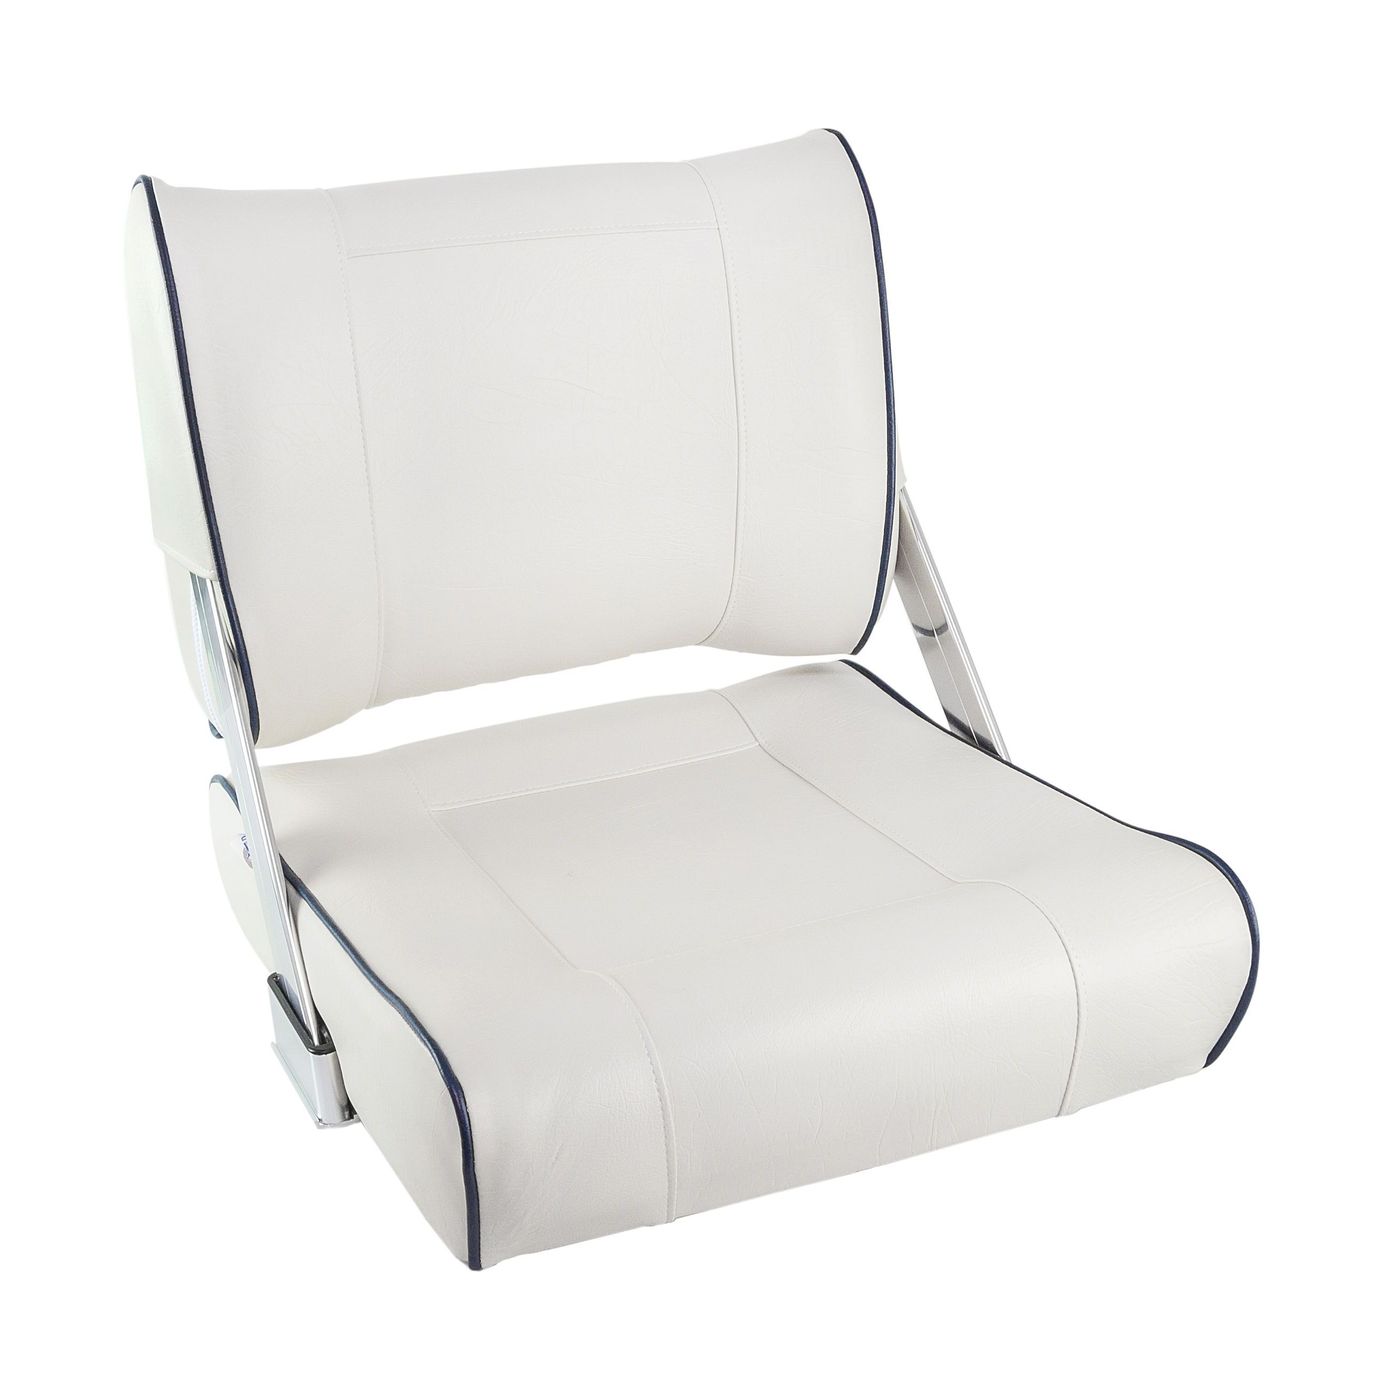 Кресло мягкое с перекидной спинкой белого цвета и синим кантом 1042048 кресло first mate мягкое материал белый винил 1001006c